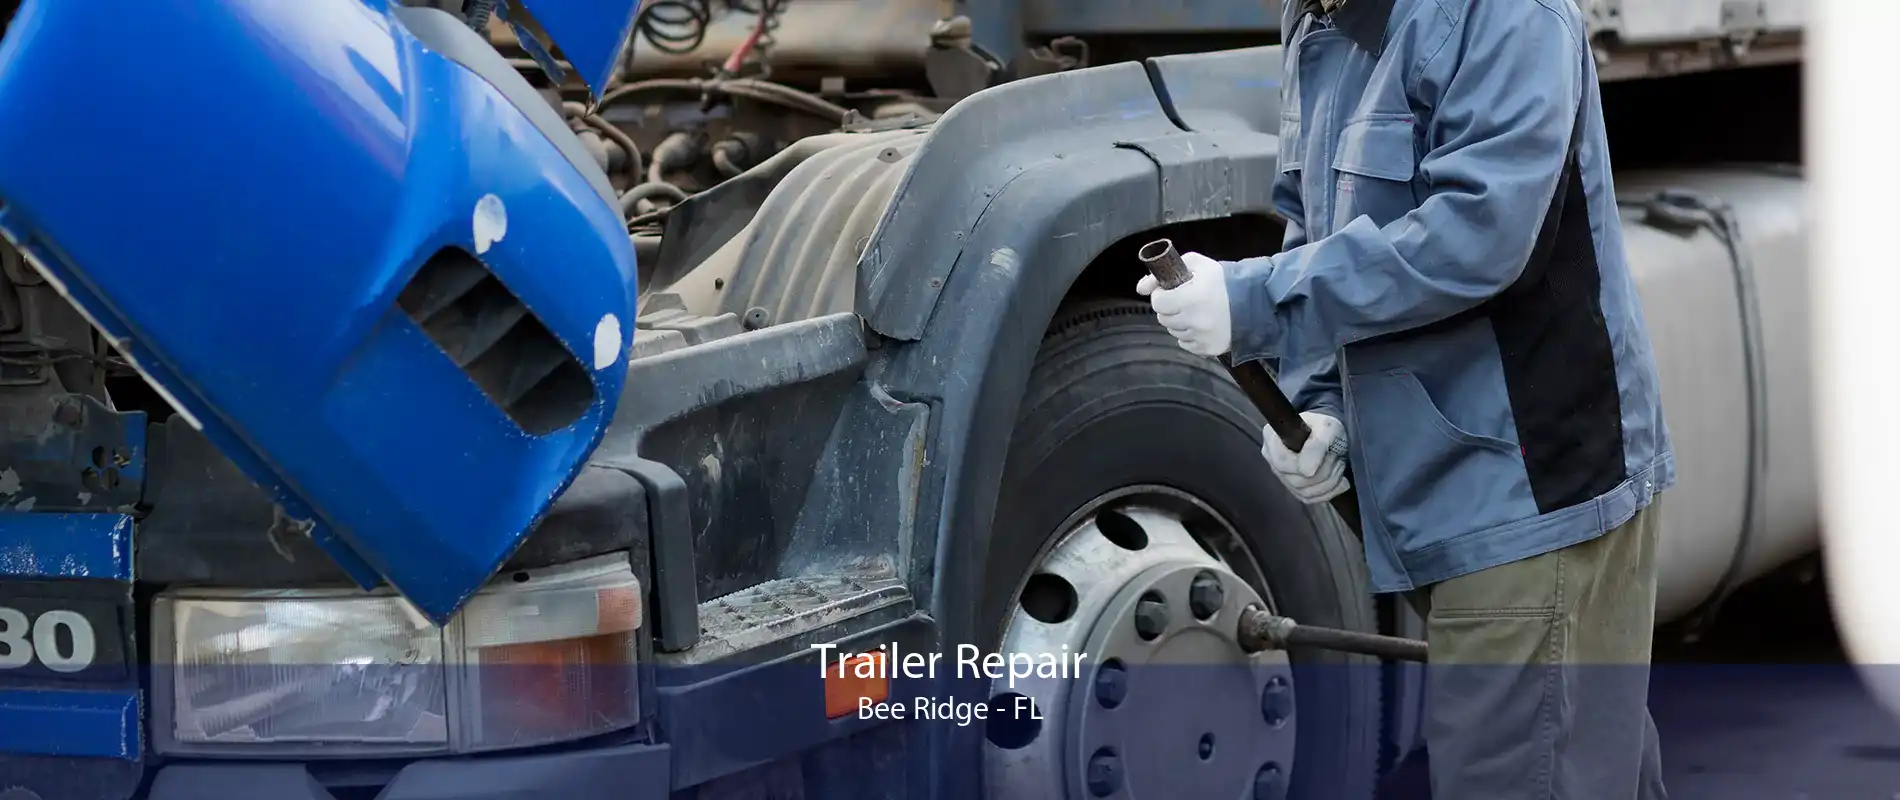 Trailer Repair Bee Ridge - FL